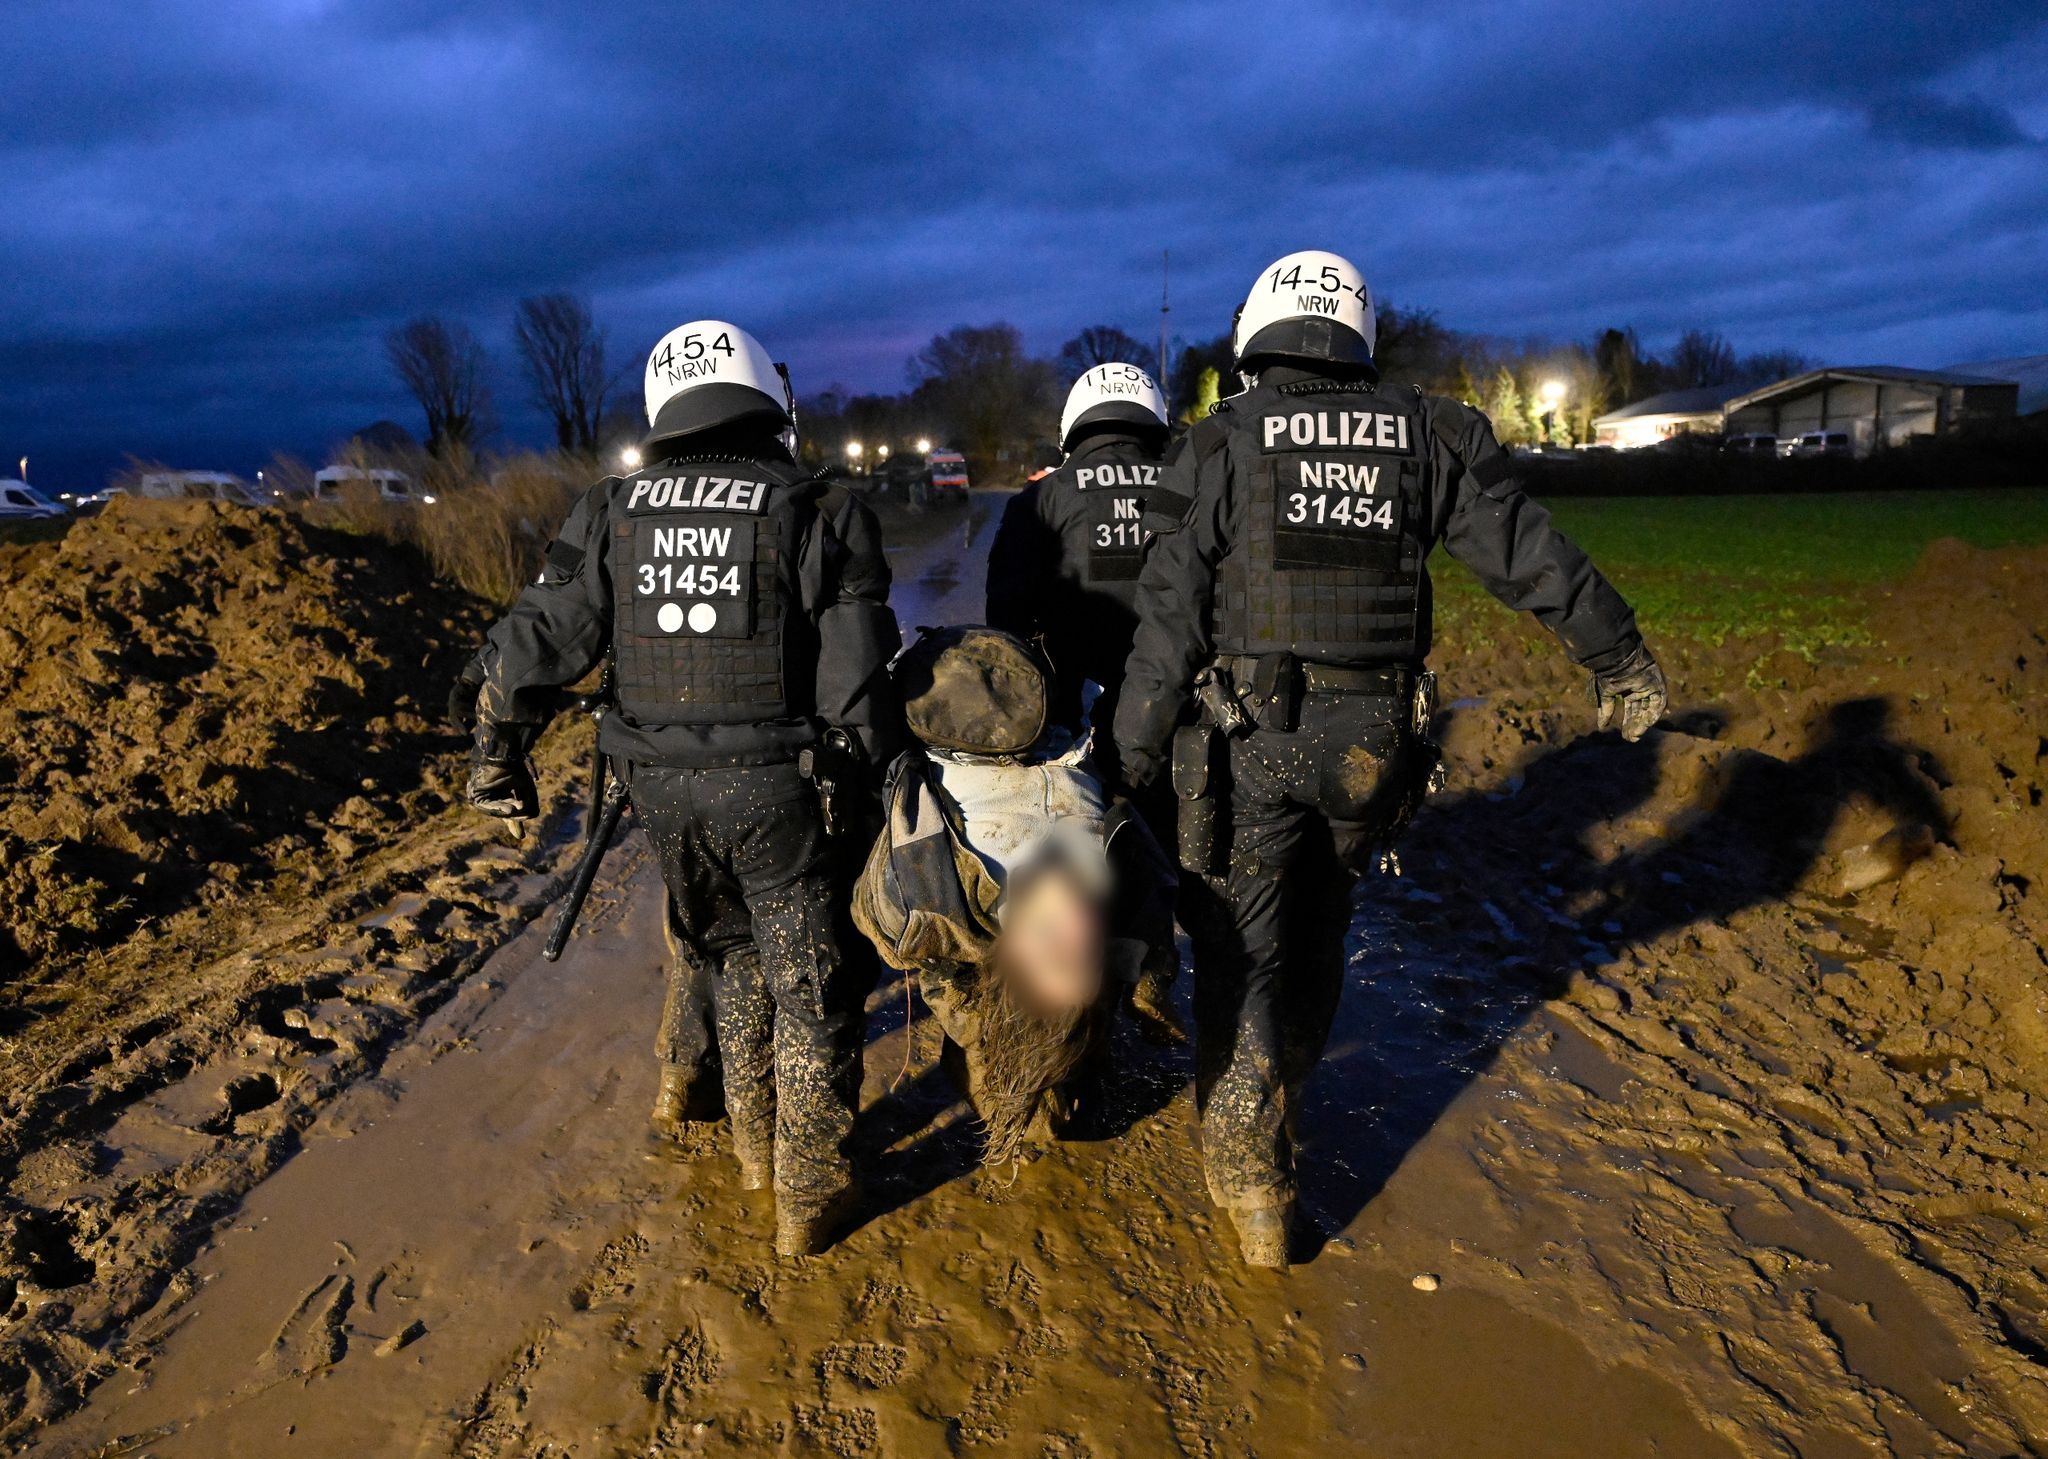 Polizisten tragen einen verletzten Demonstranten während der Demonstration von Klimaaktivisten am Rande des Braunkohletagebaus in Lützerath.